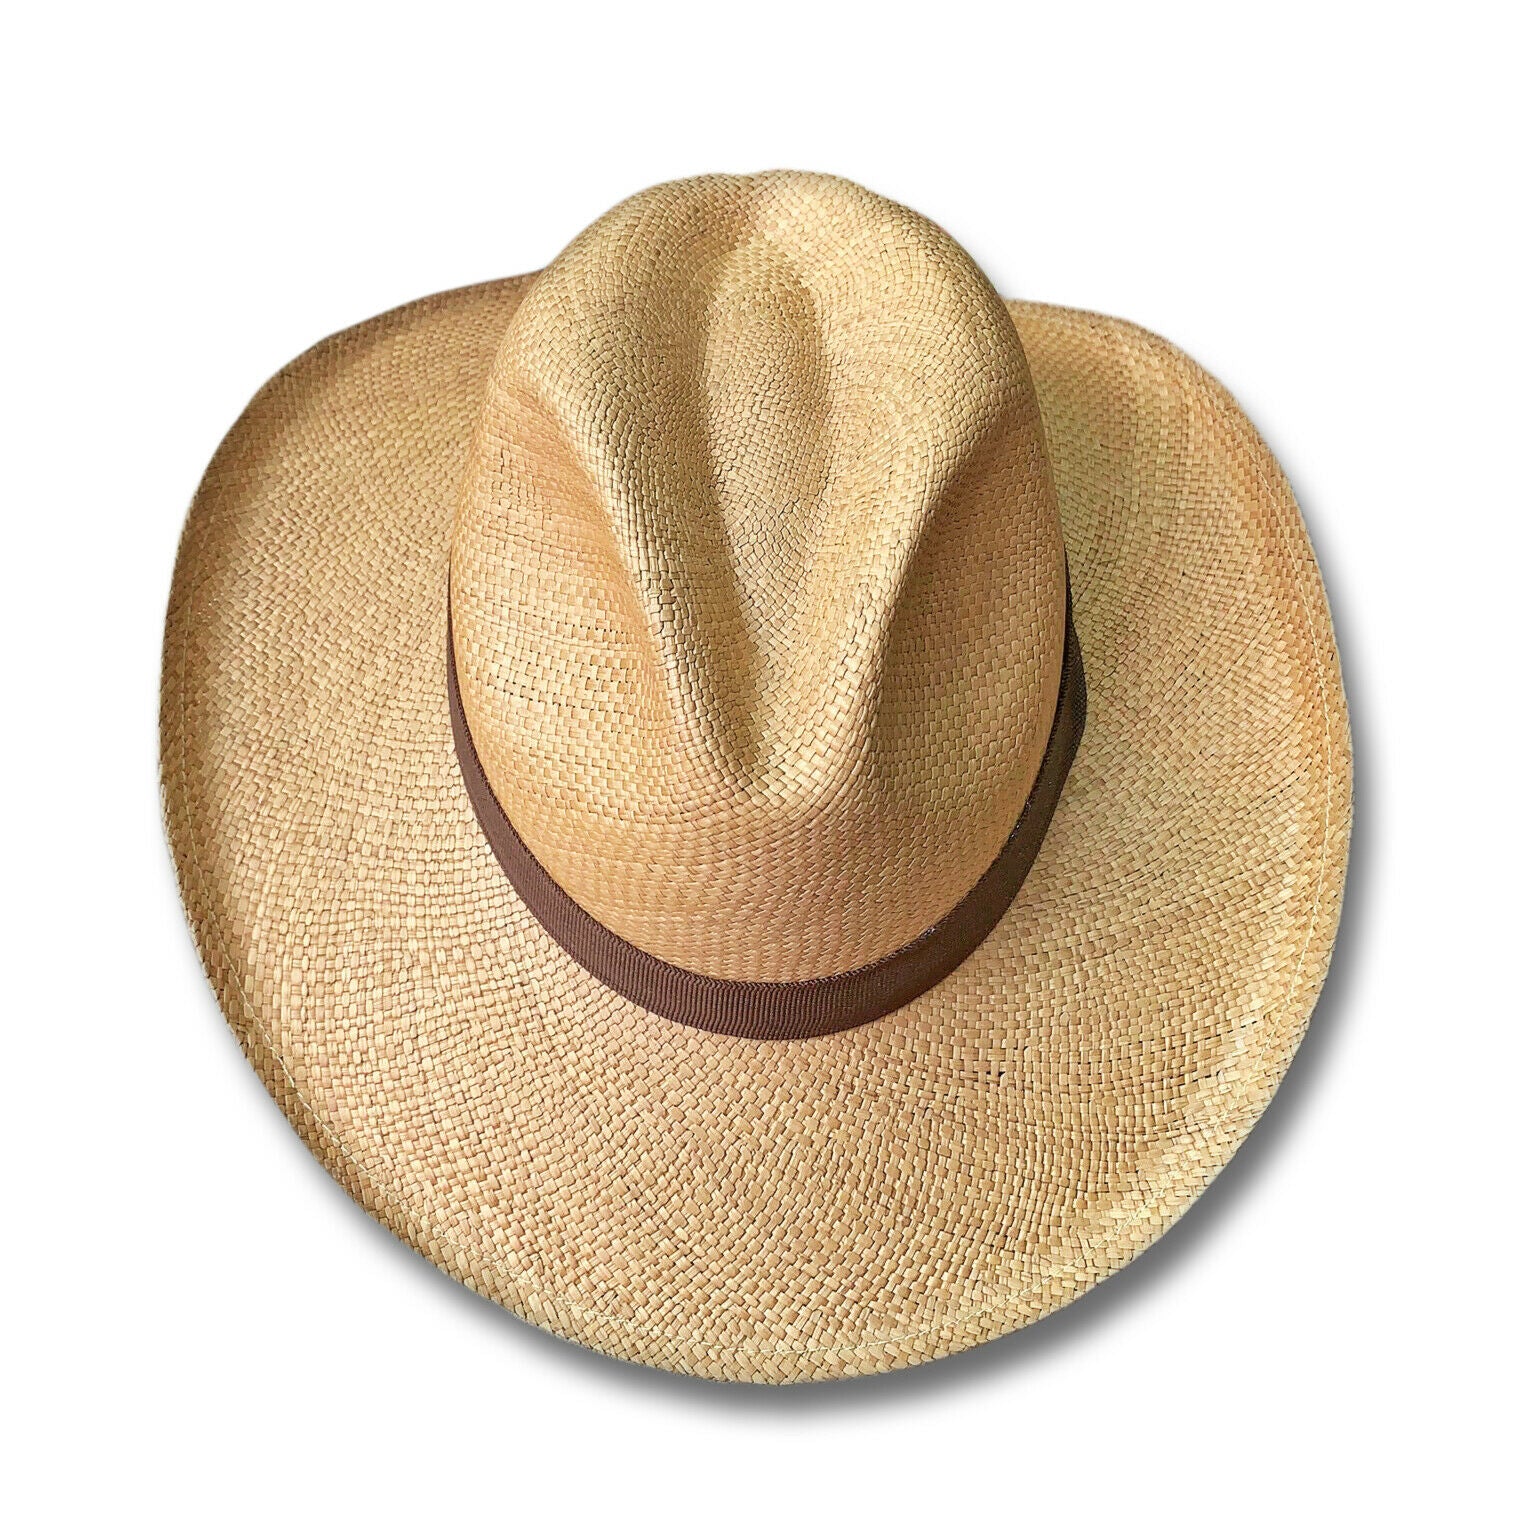 Genuine Cowboy Vaquero Style  Panama Hat Handwoven In Ecuador - Large Brim